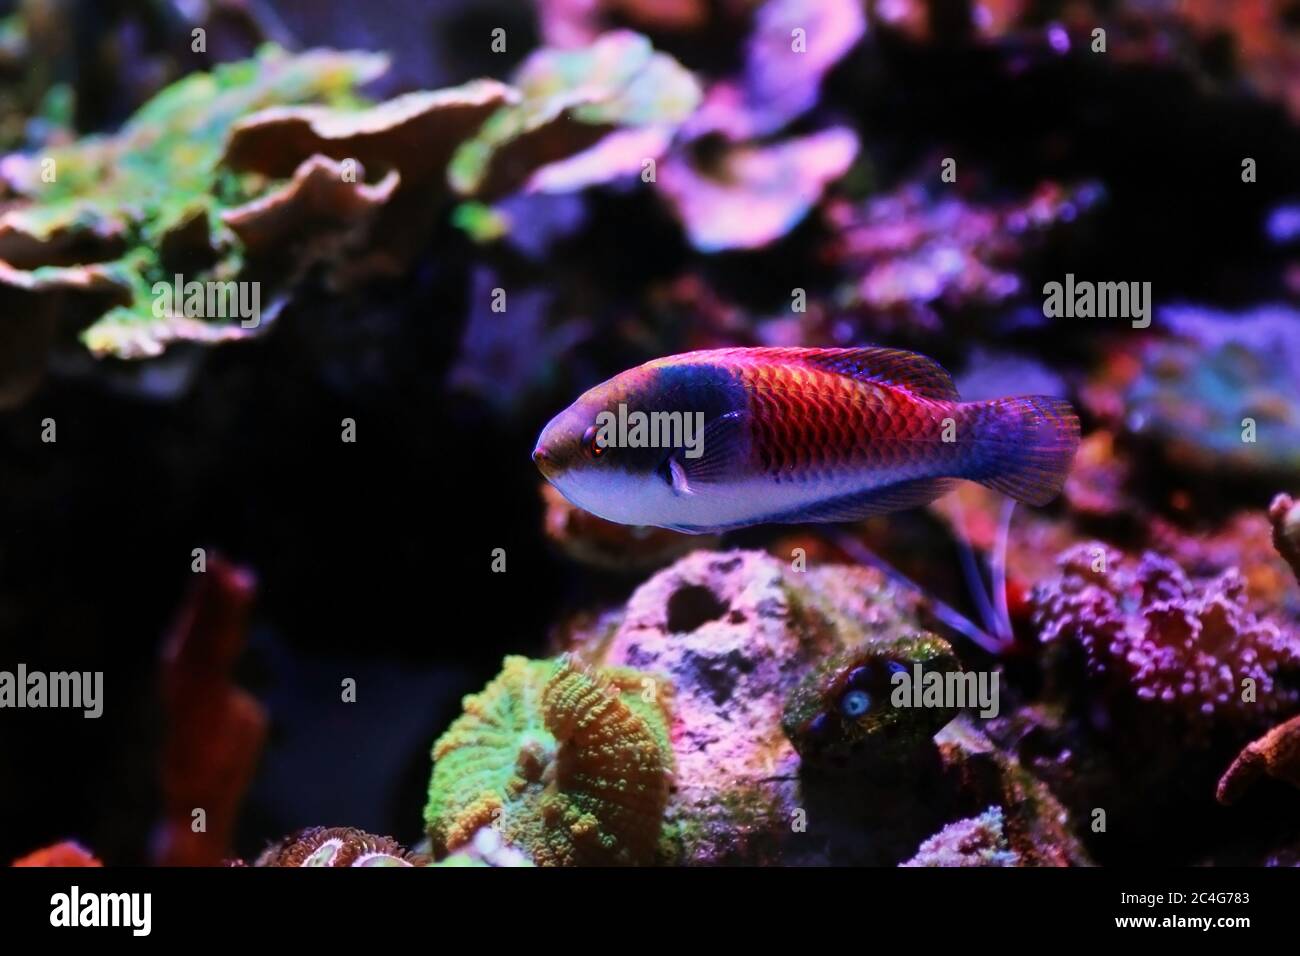 Blue face wrasse saltwater fish in aquarium Stock Photo